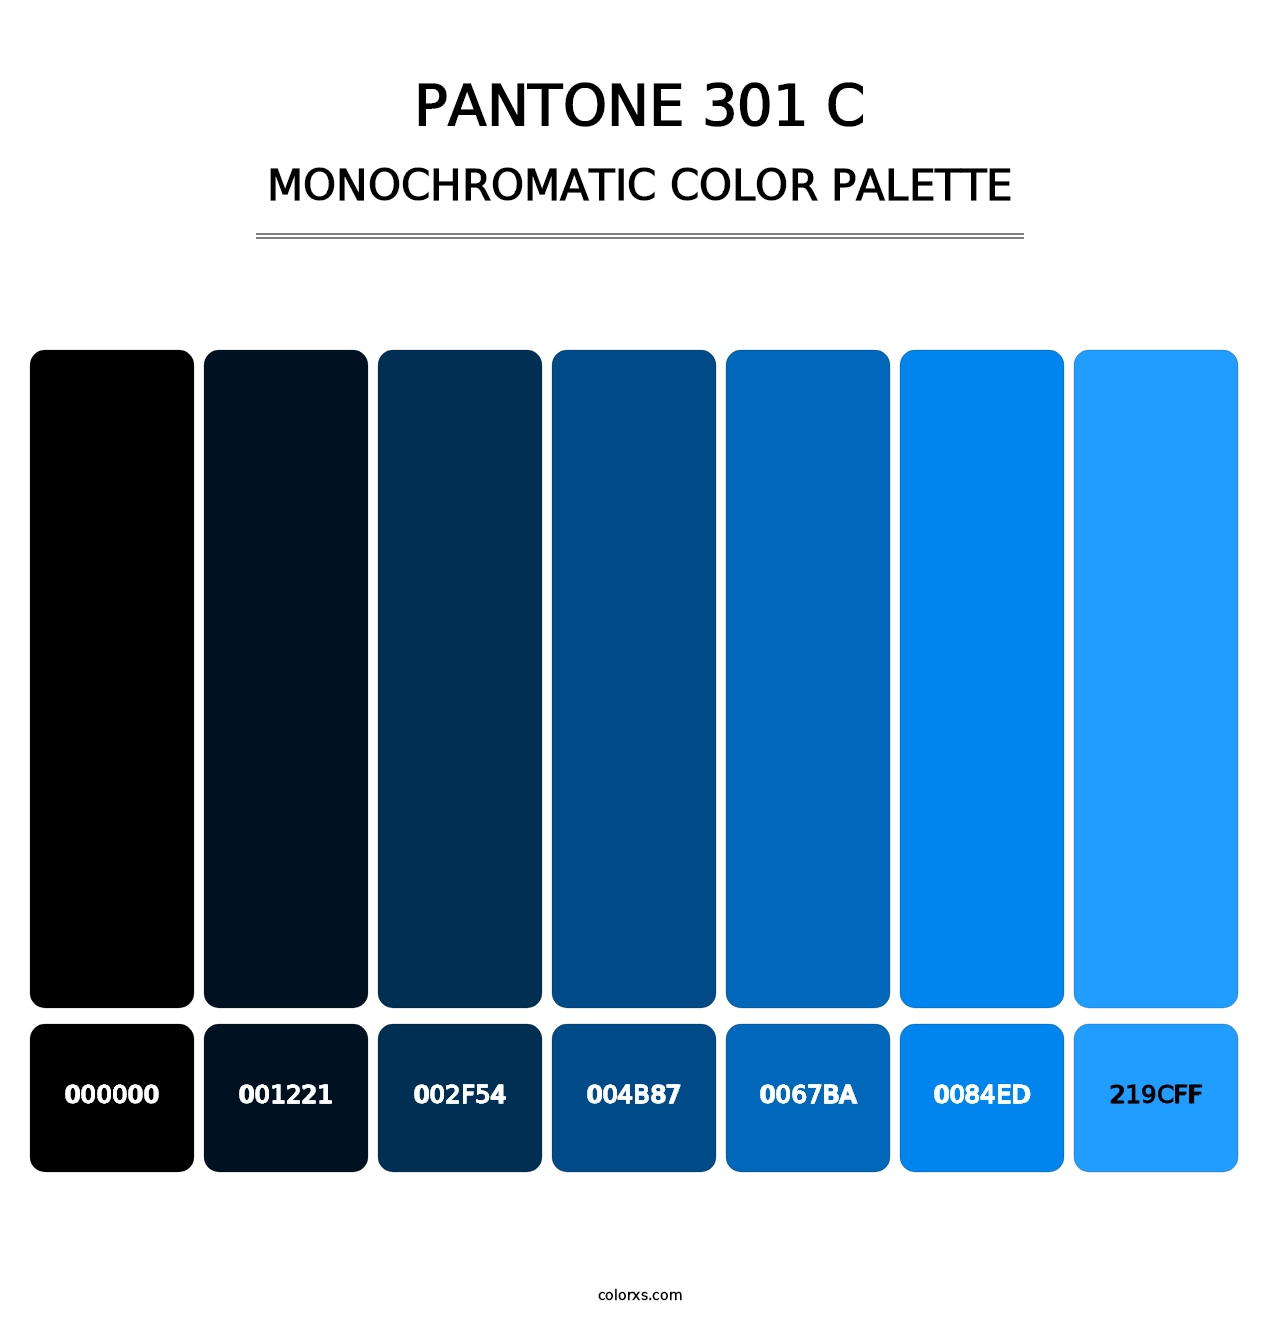 PANTONE 301 C - Monochromatic Color Palette